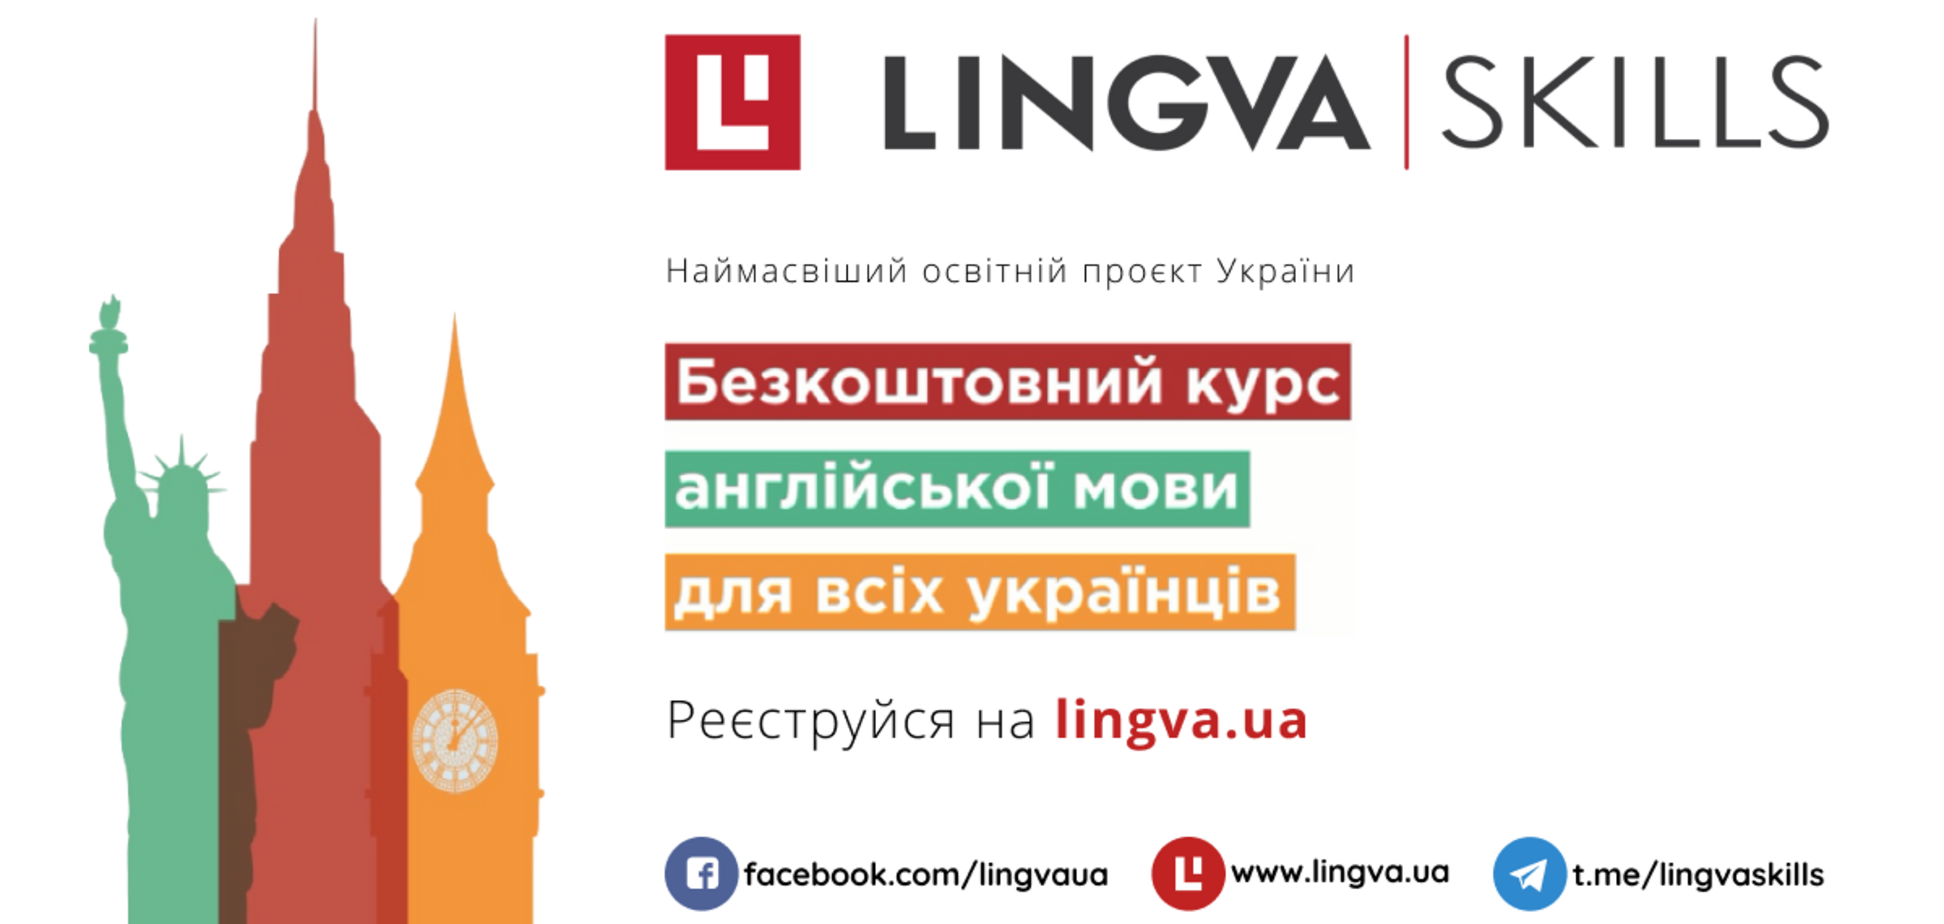 В Україні запустили проєкт з вивчення англійської мови 'Lingva.Skills'